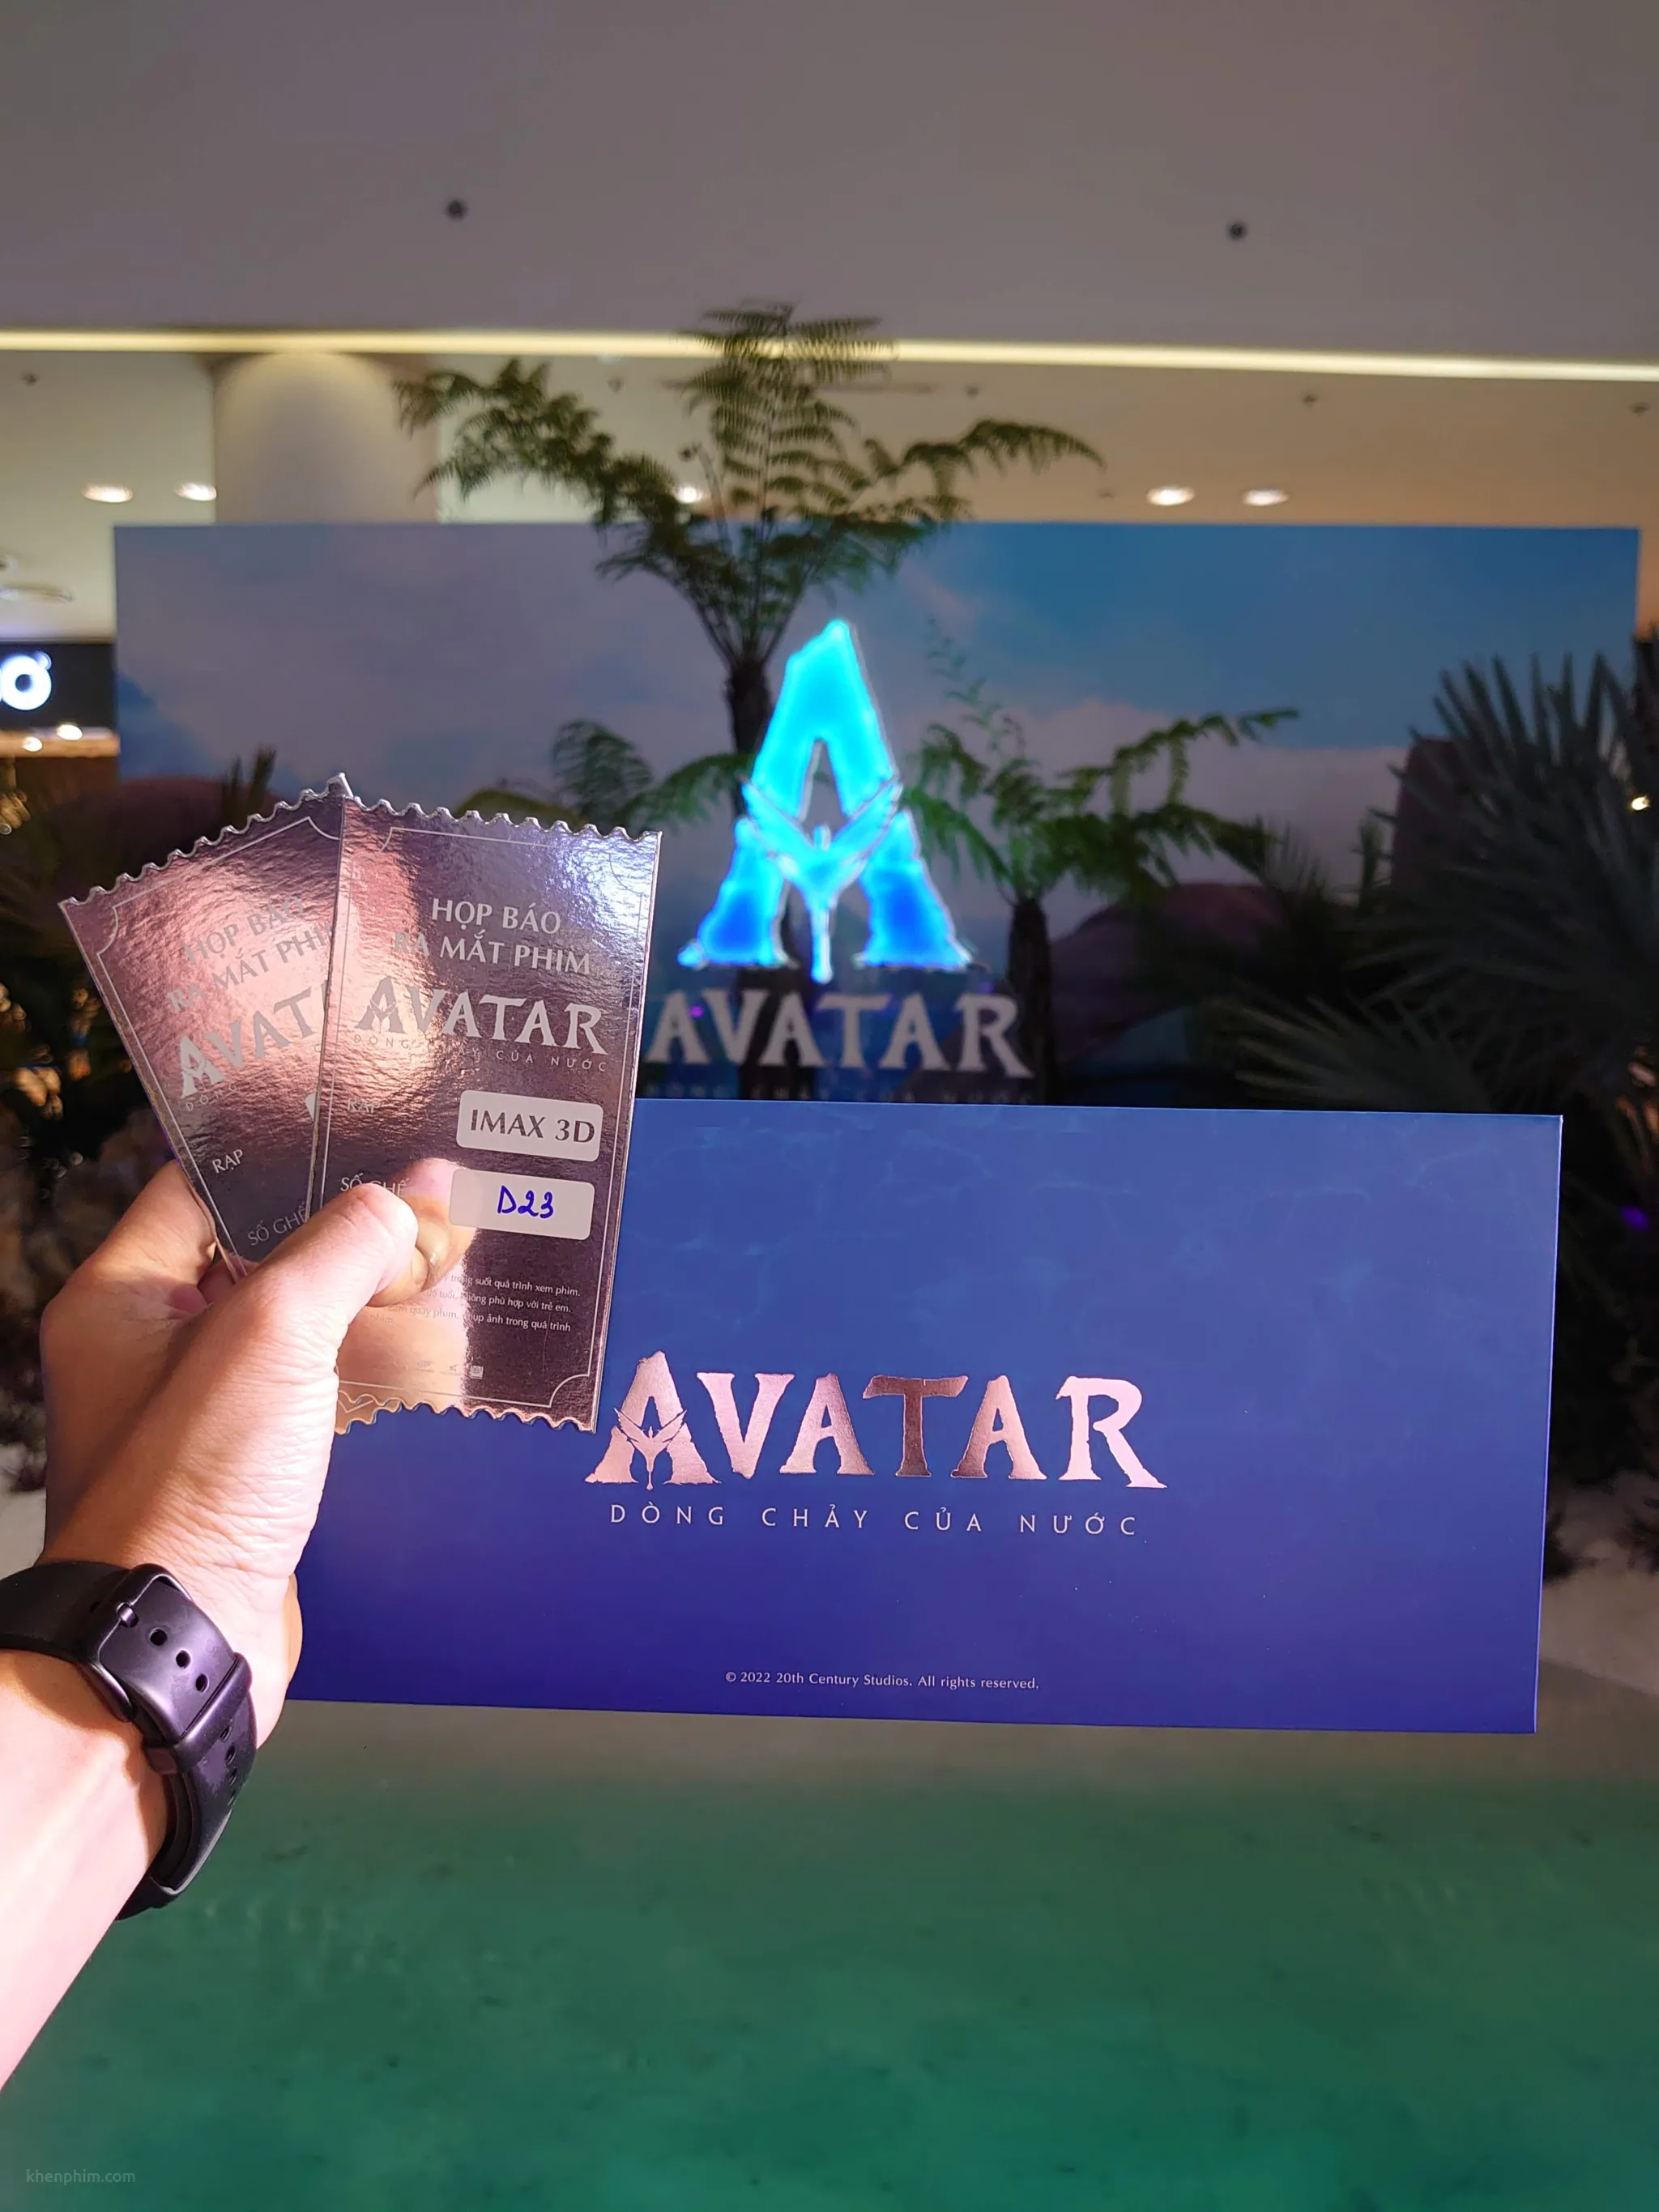 Vé xem phim Avatar: Dòng Chảy Của Nước. Vị trí ghế ngồi không tốt nên hơi khó khăn trong việc đọc phụ đề cũng như thưởng thức hình ảnh 3D